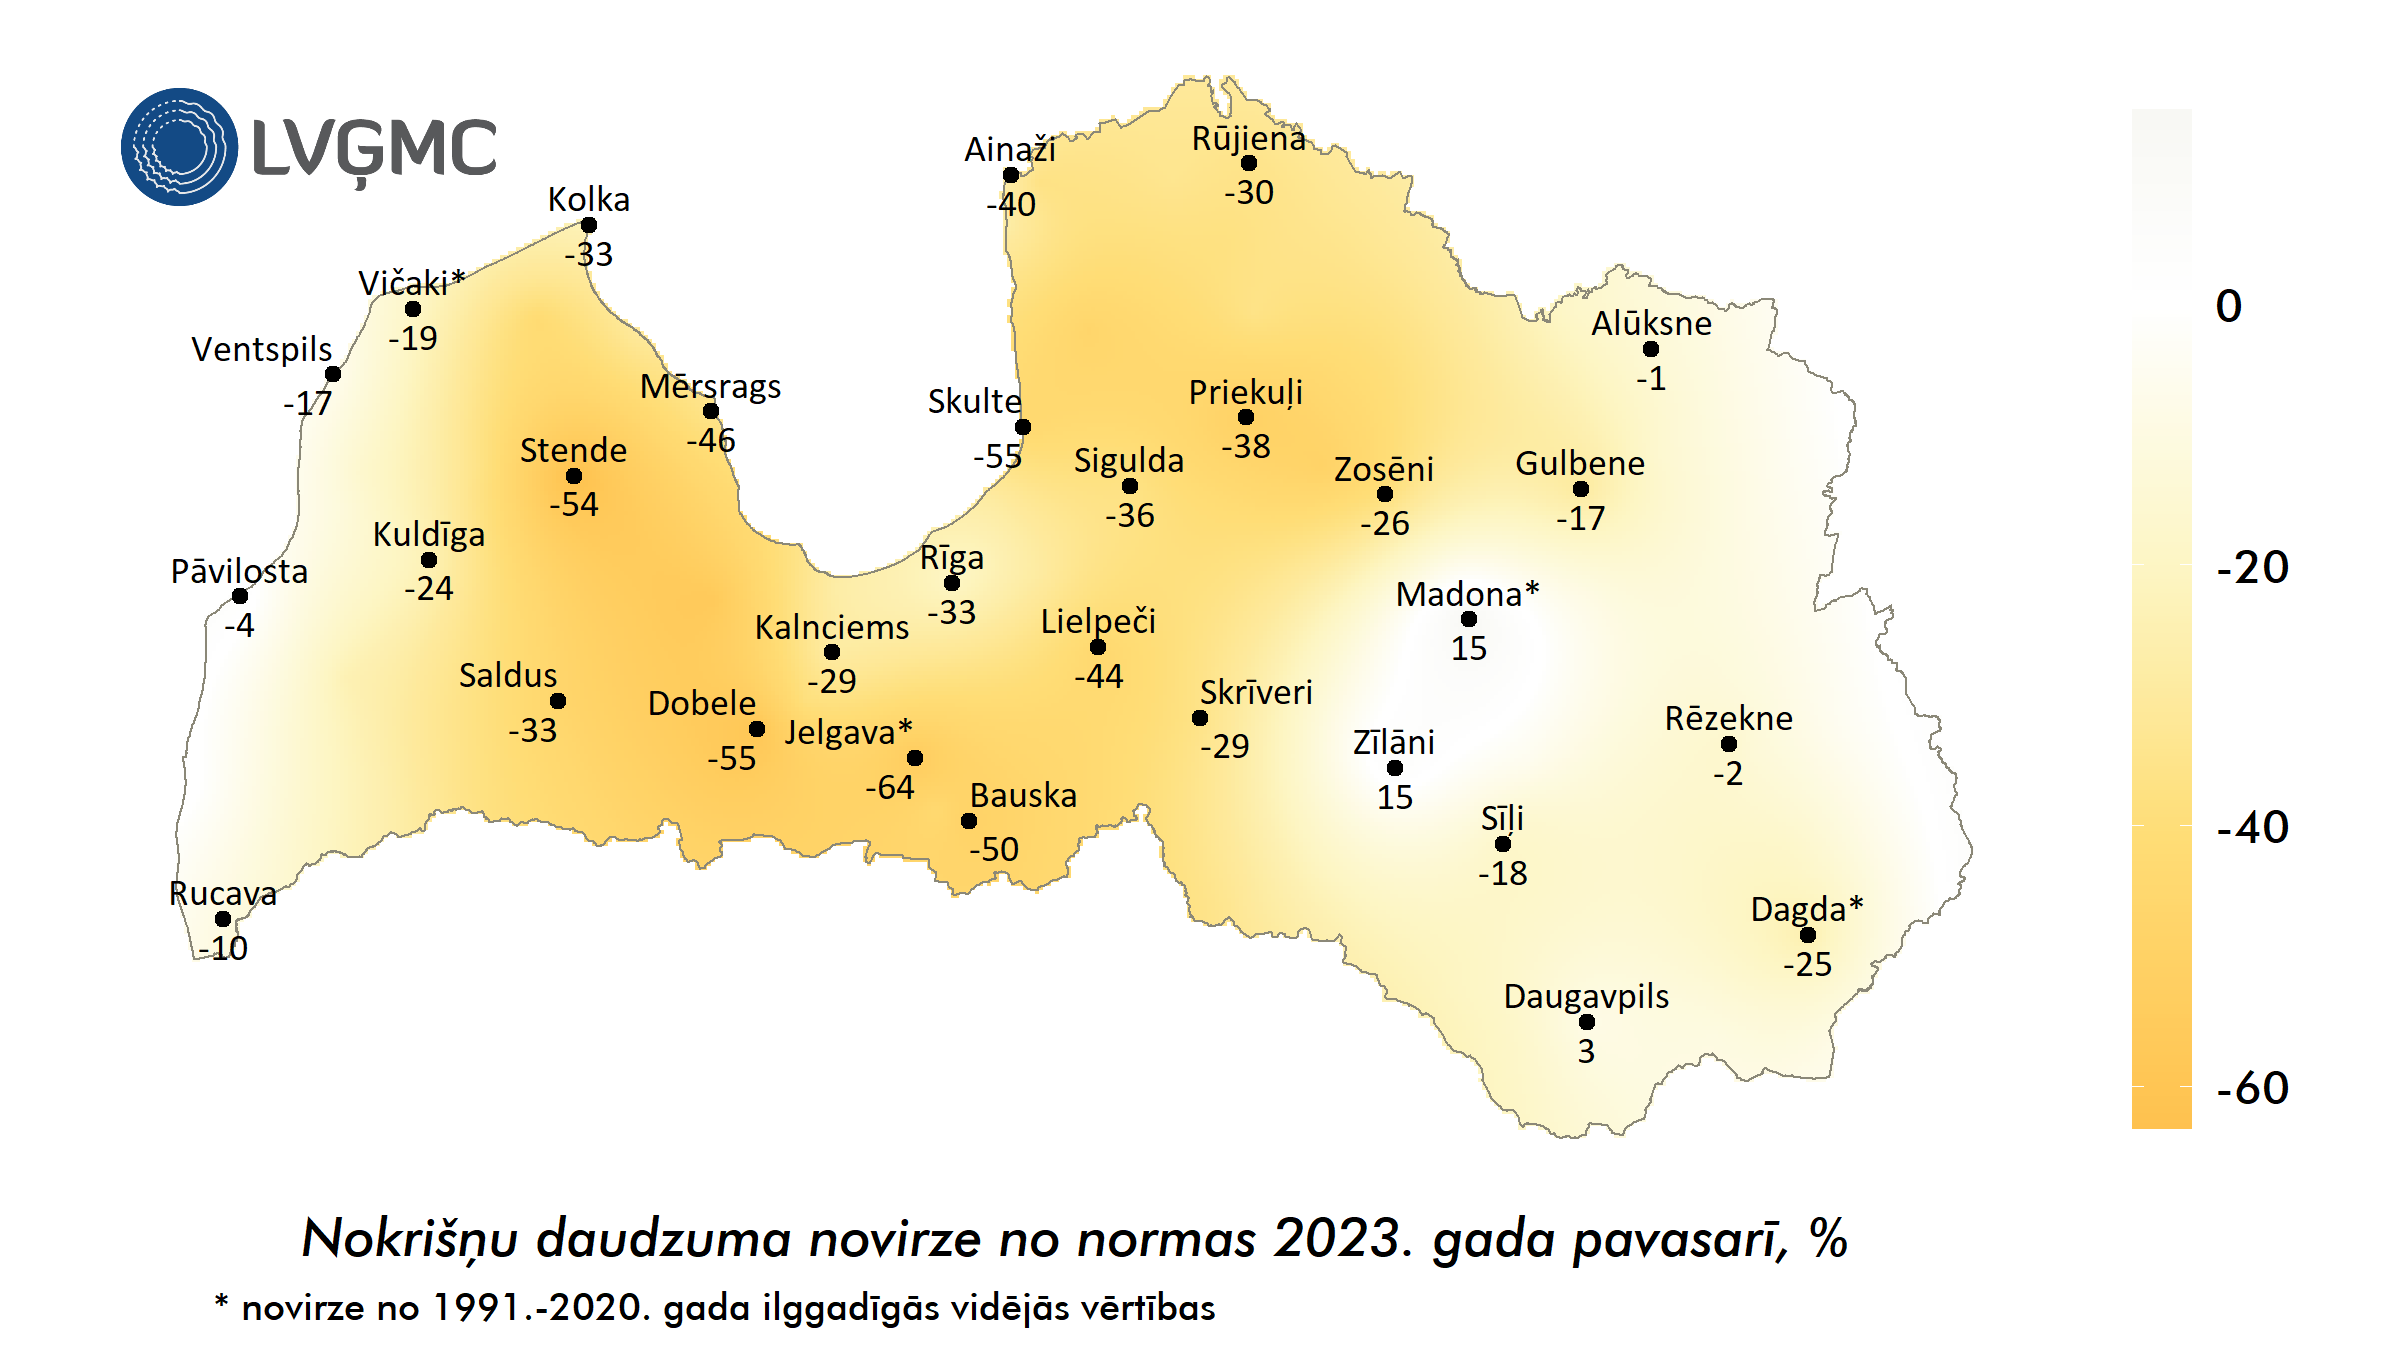 Nokrišņu daudzuma novirze no normas 2023. gada pavasarī, °C